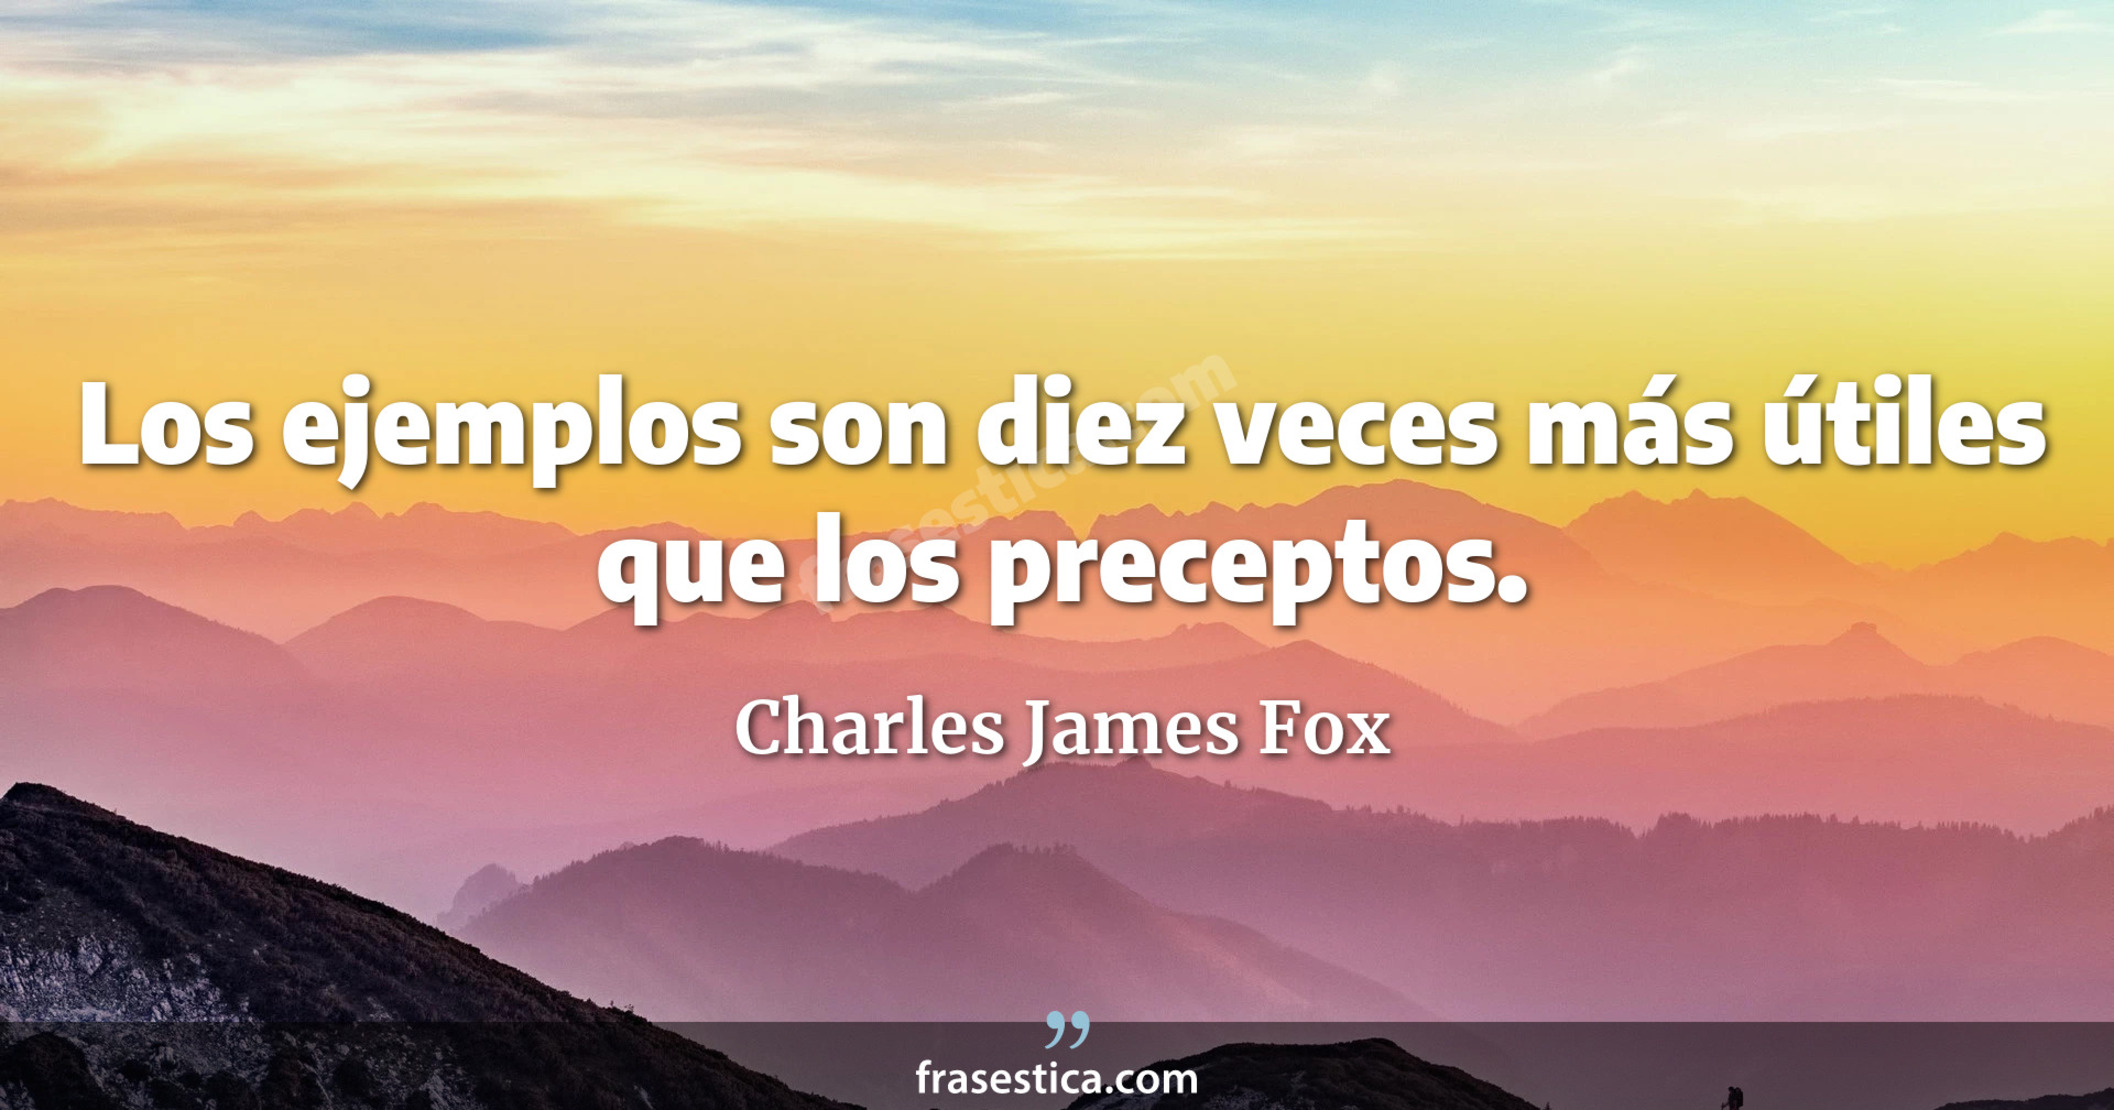 Los ejemplos son diez veces más útiles que los preceptos. - Charles James Fox